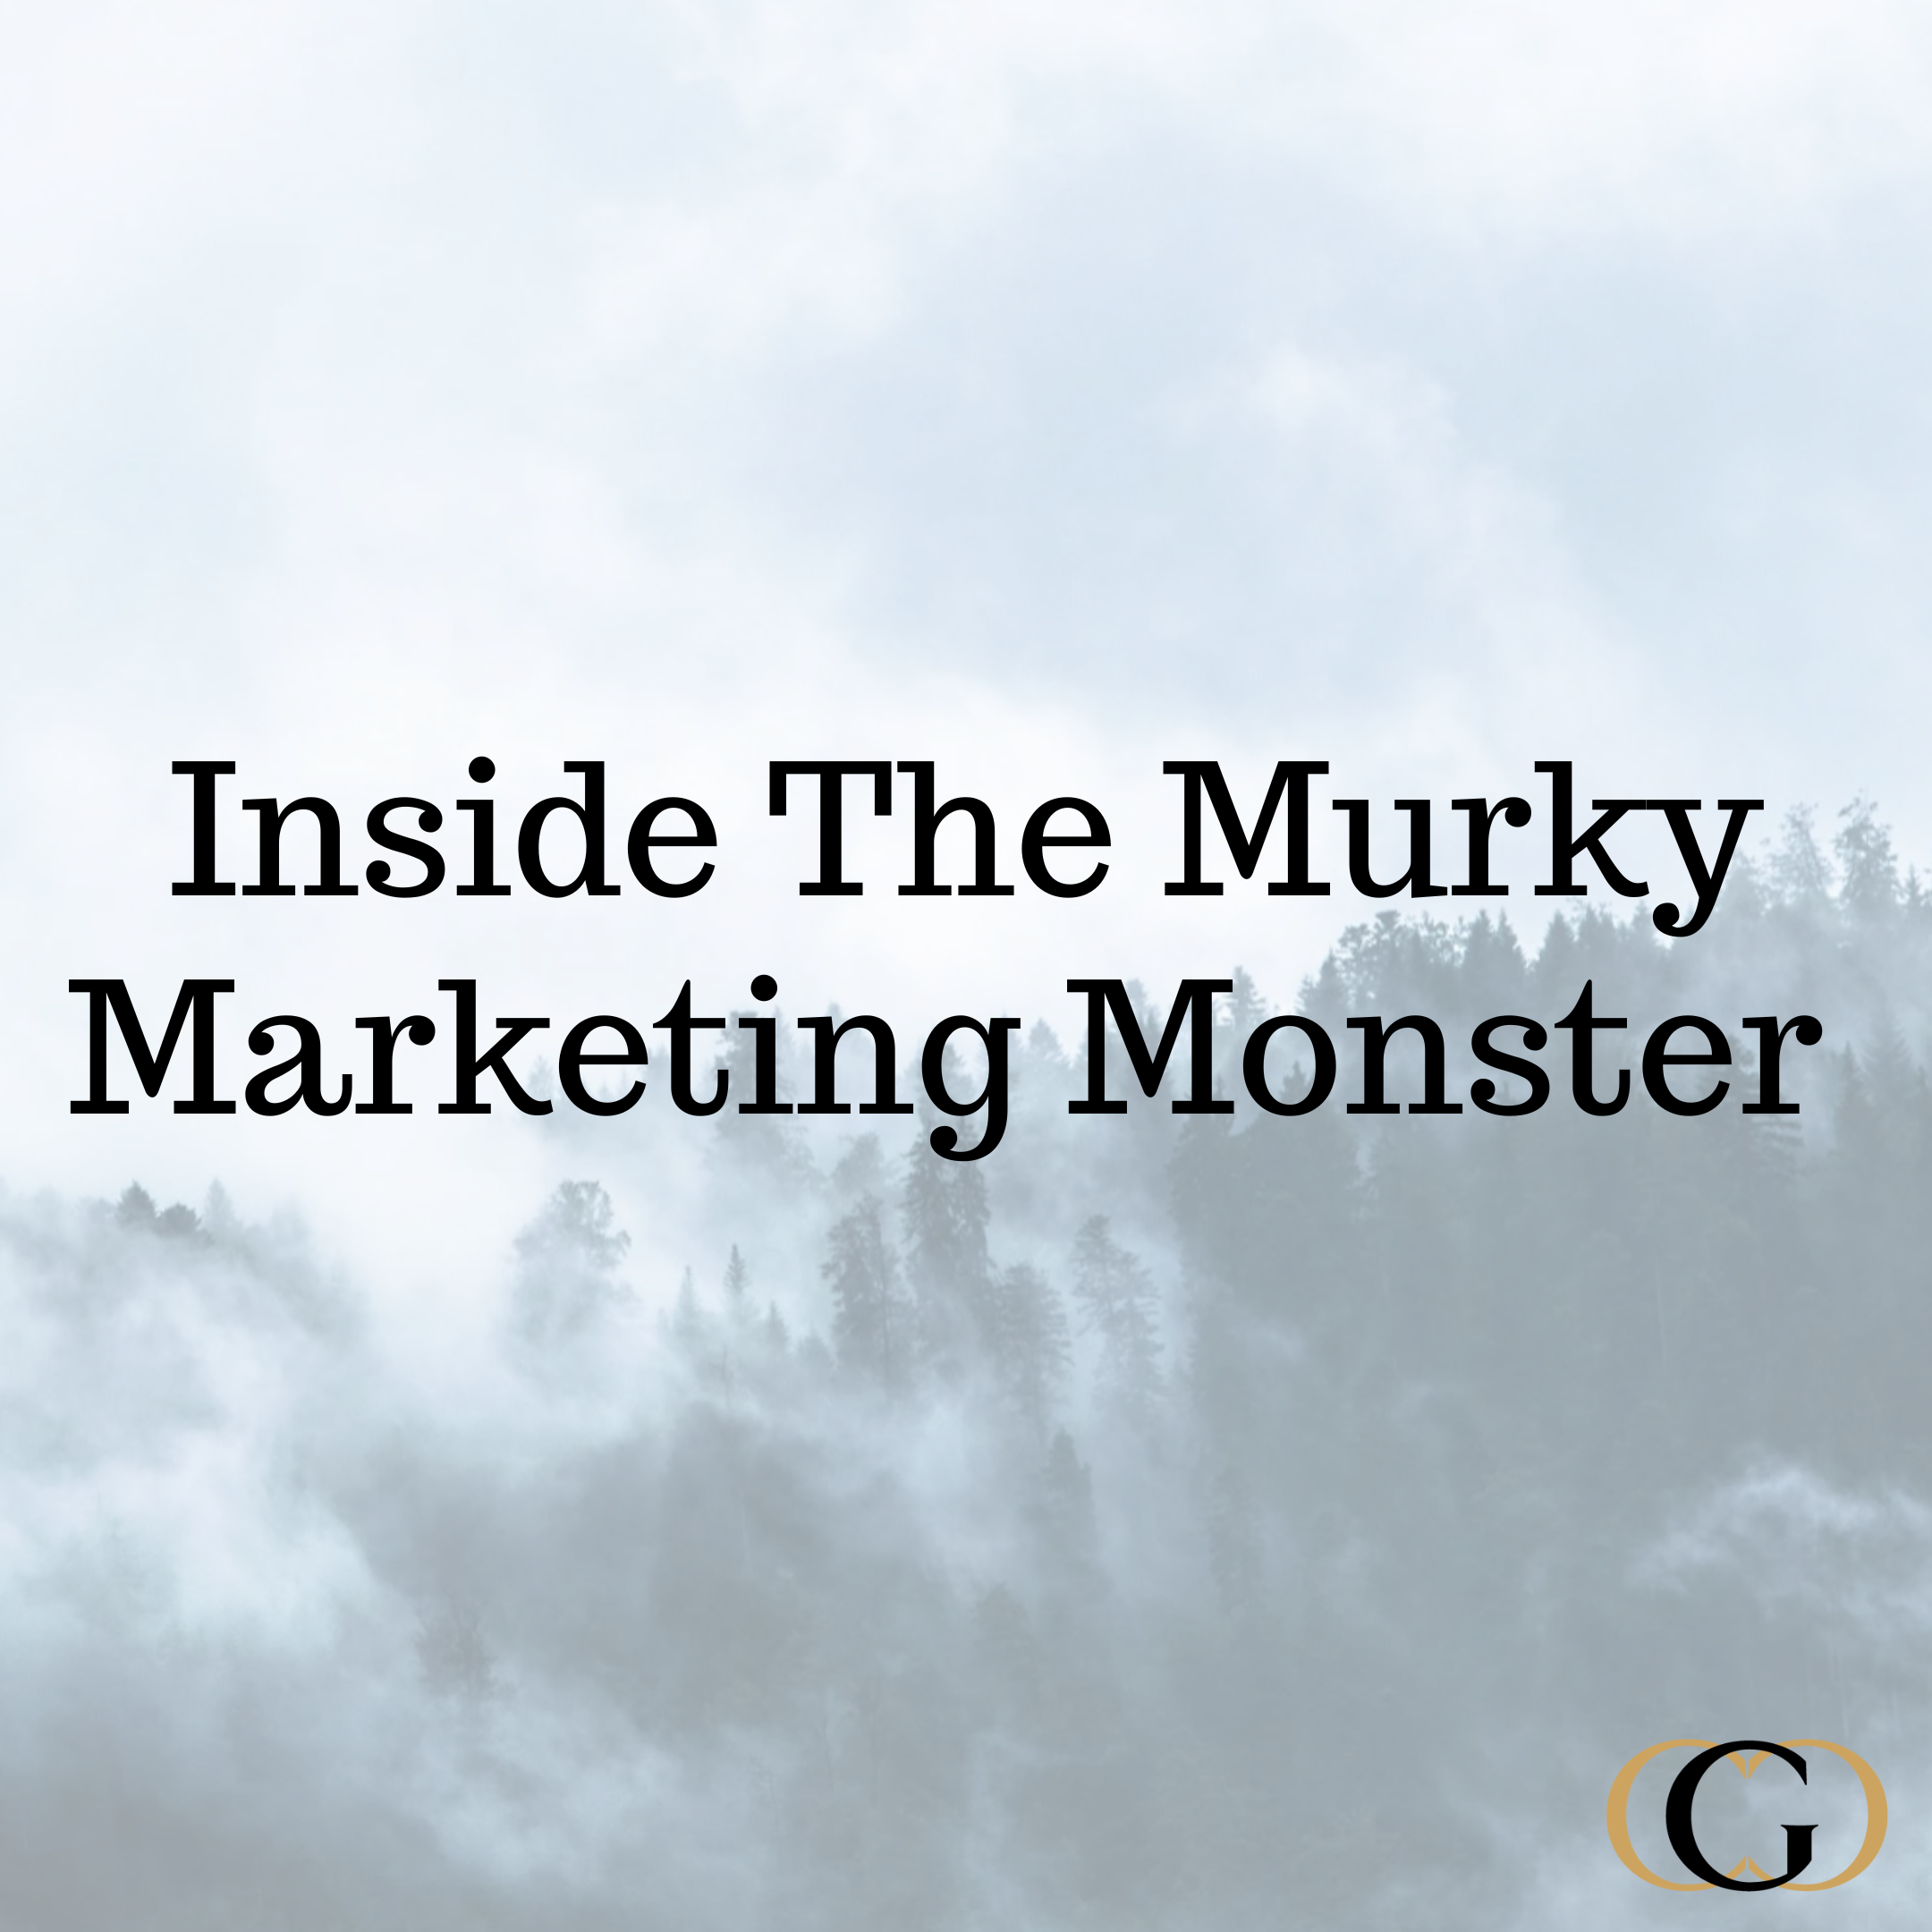 Inside the Murky Marketing Monster